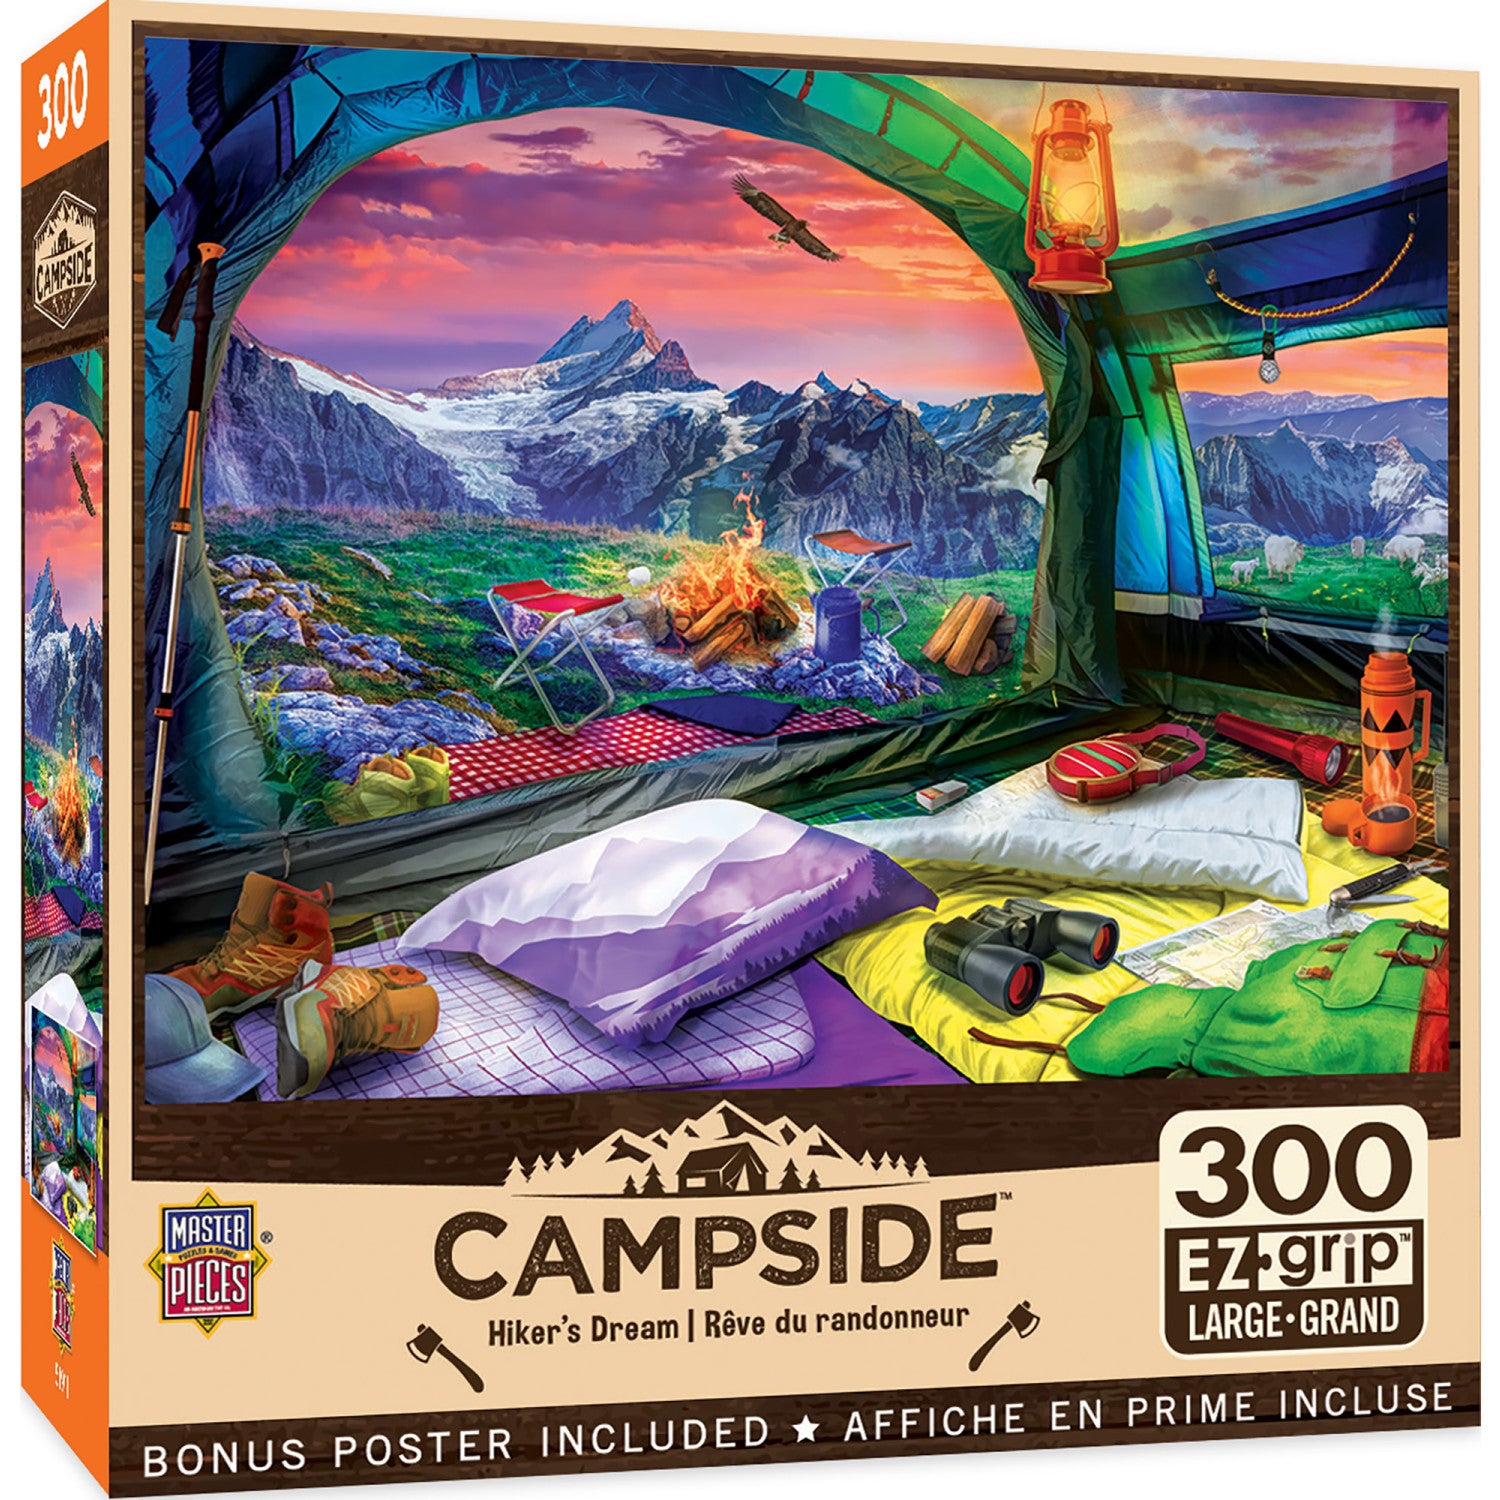 Campside - Hiker's Dream 300 Piece EZ Grip Jigsaw Puzzle